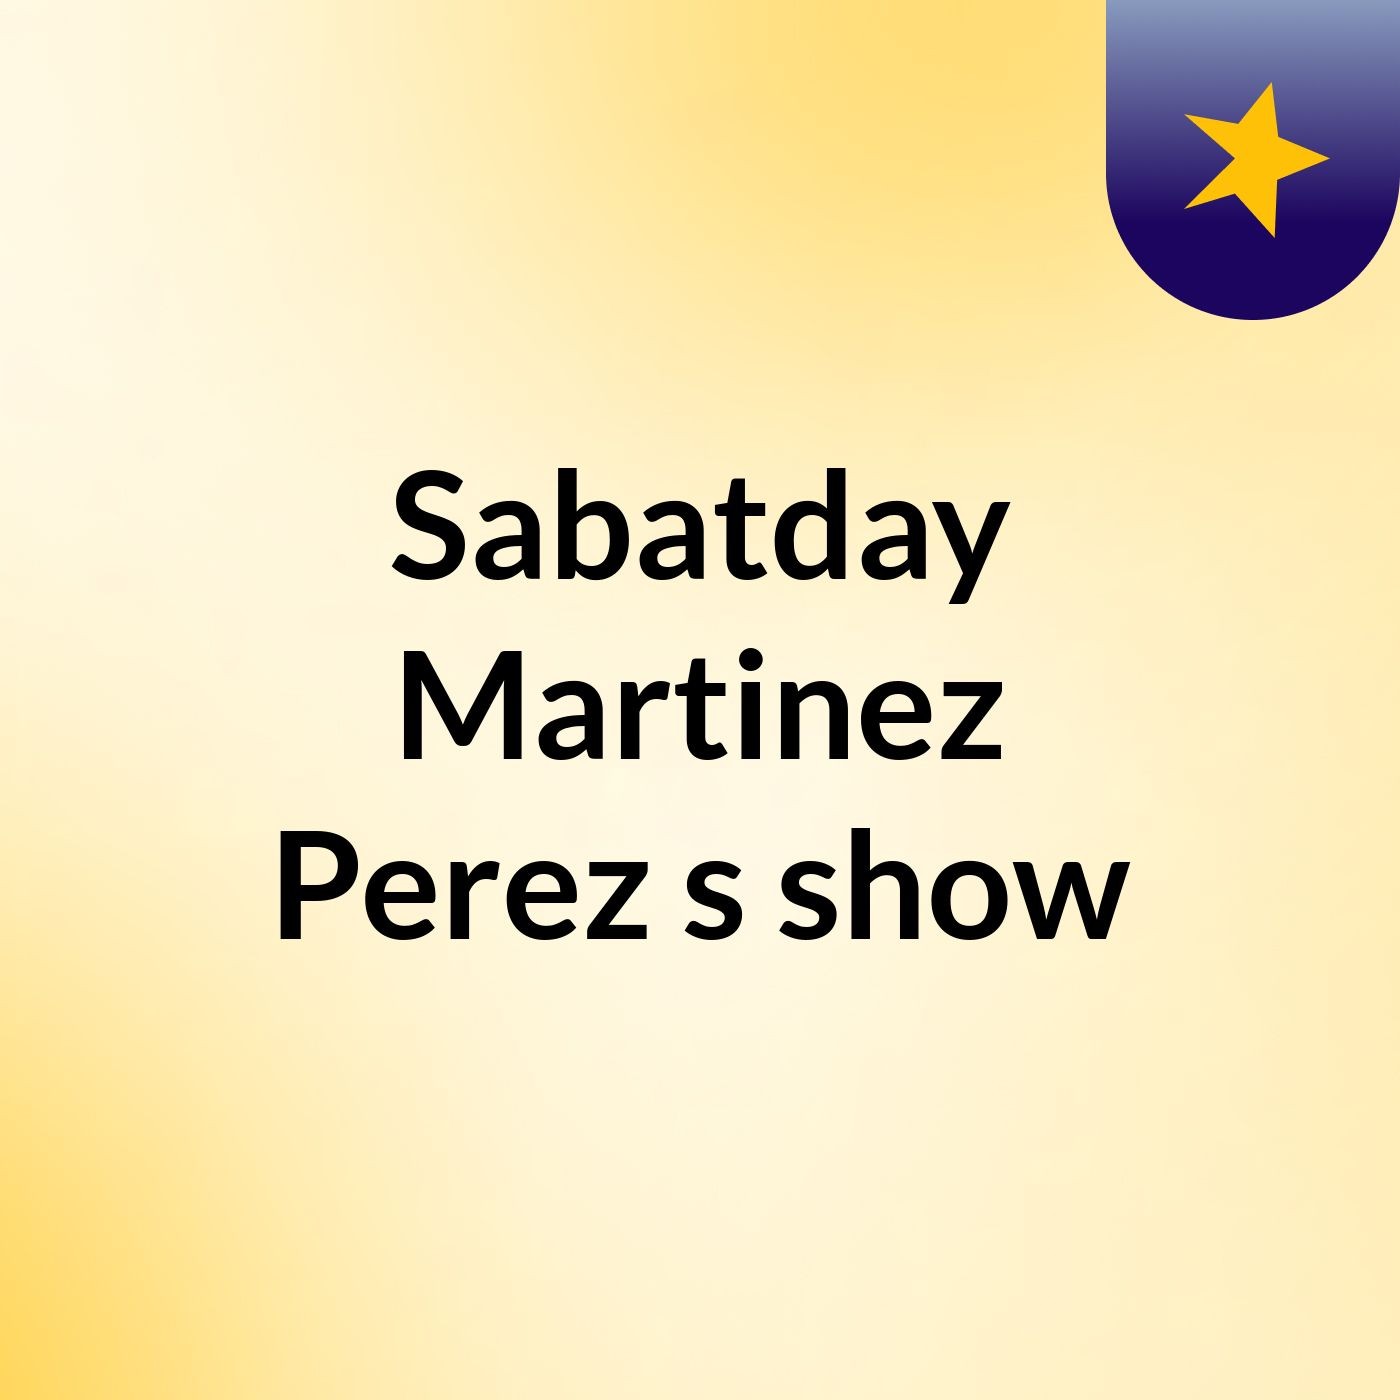 Sabatday Martinez Perez's show